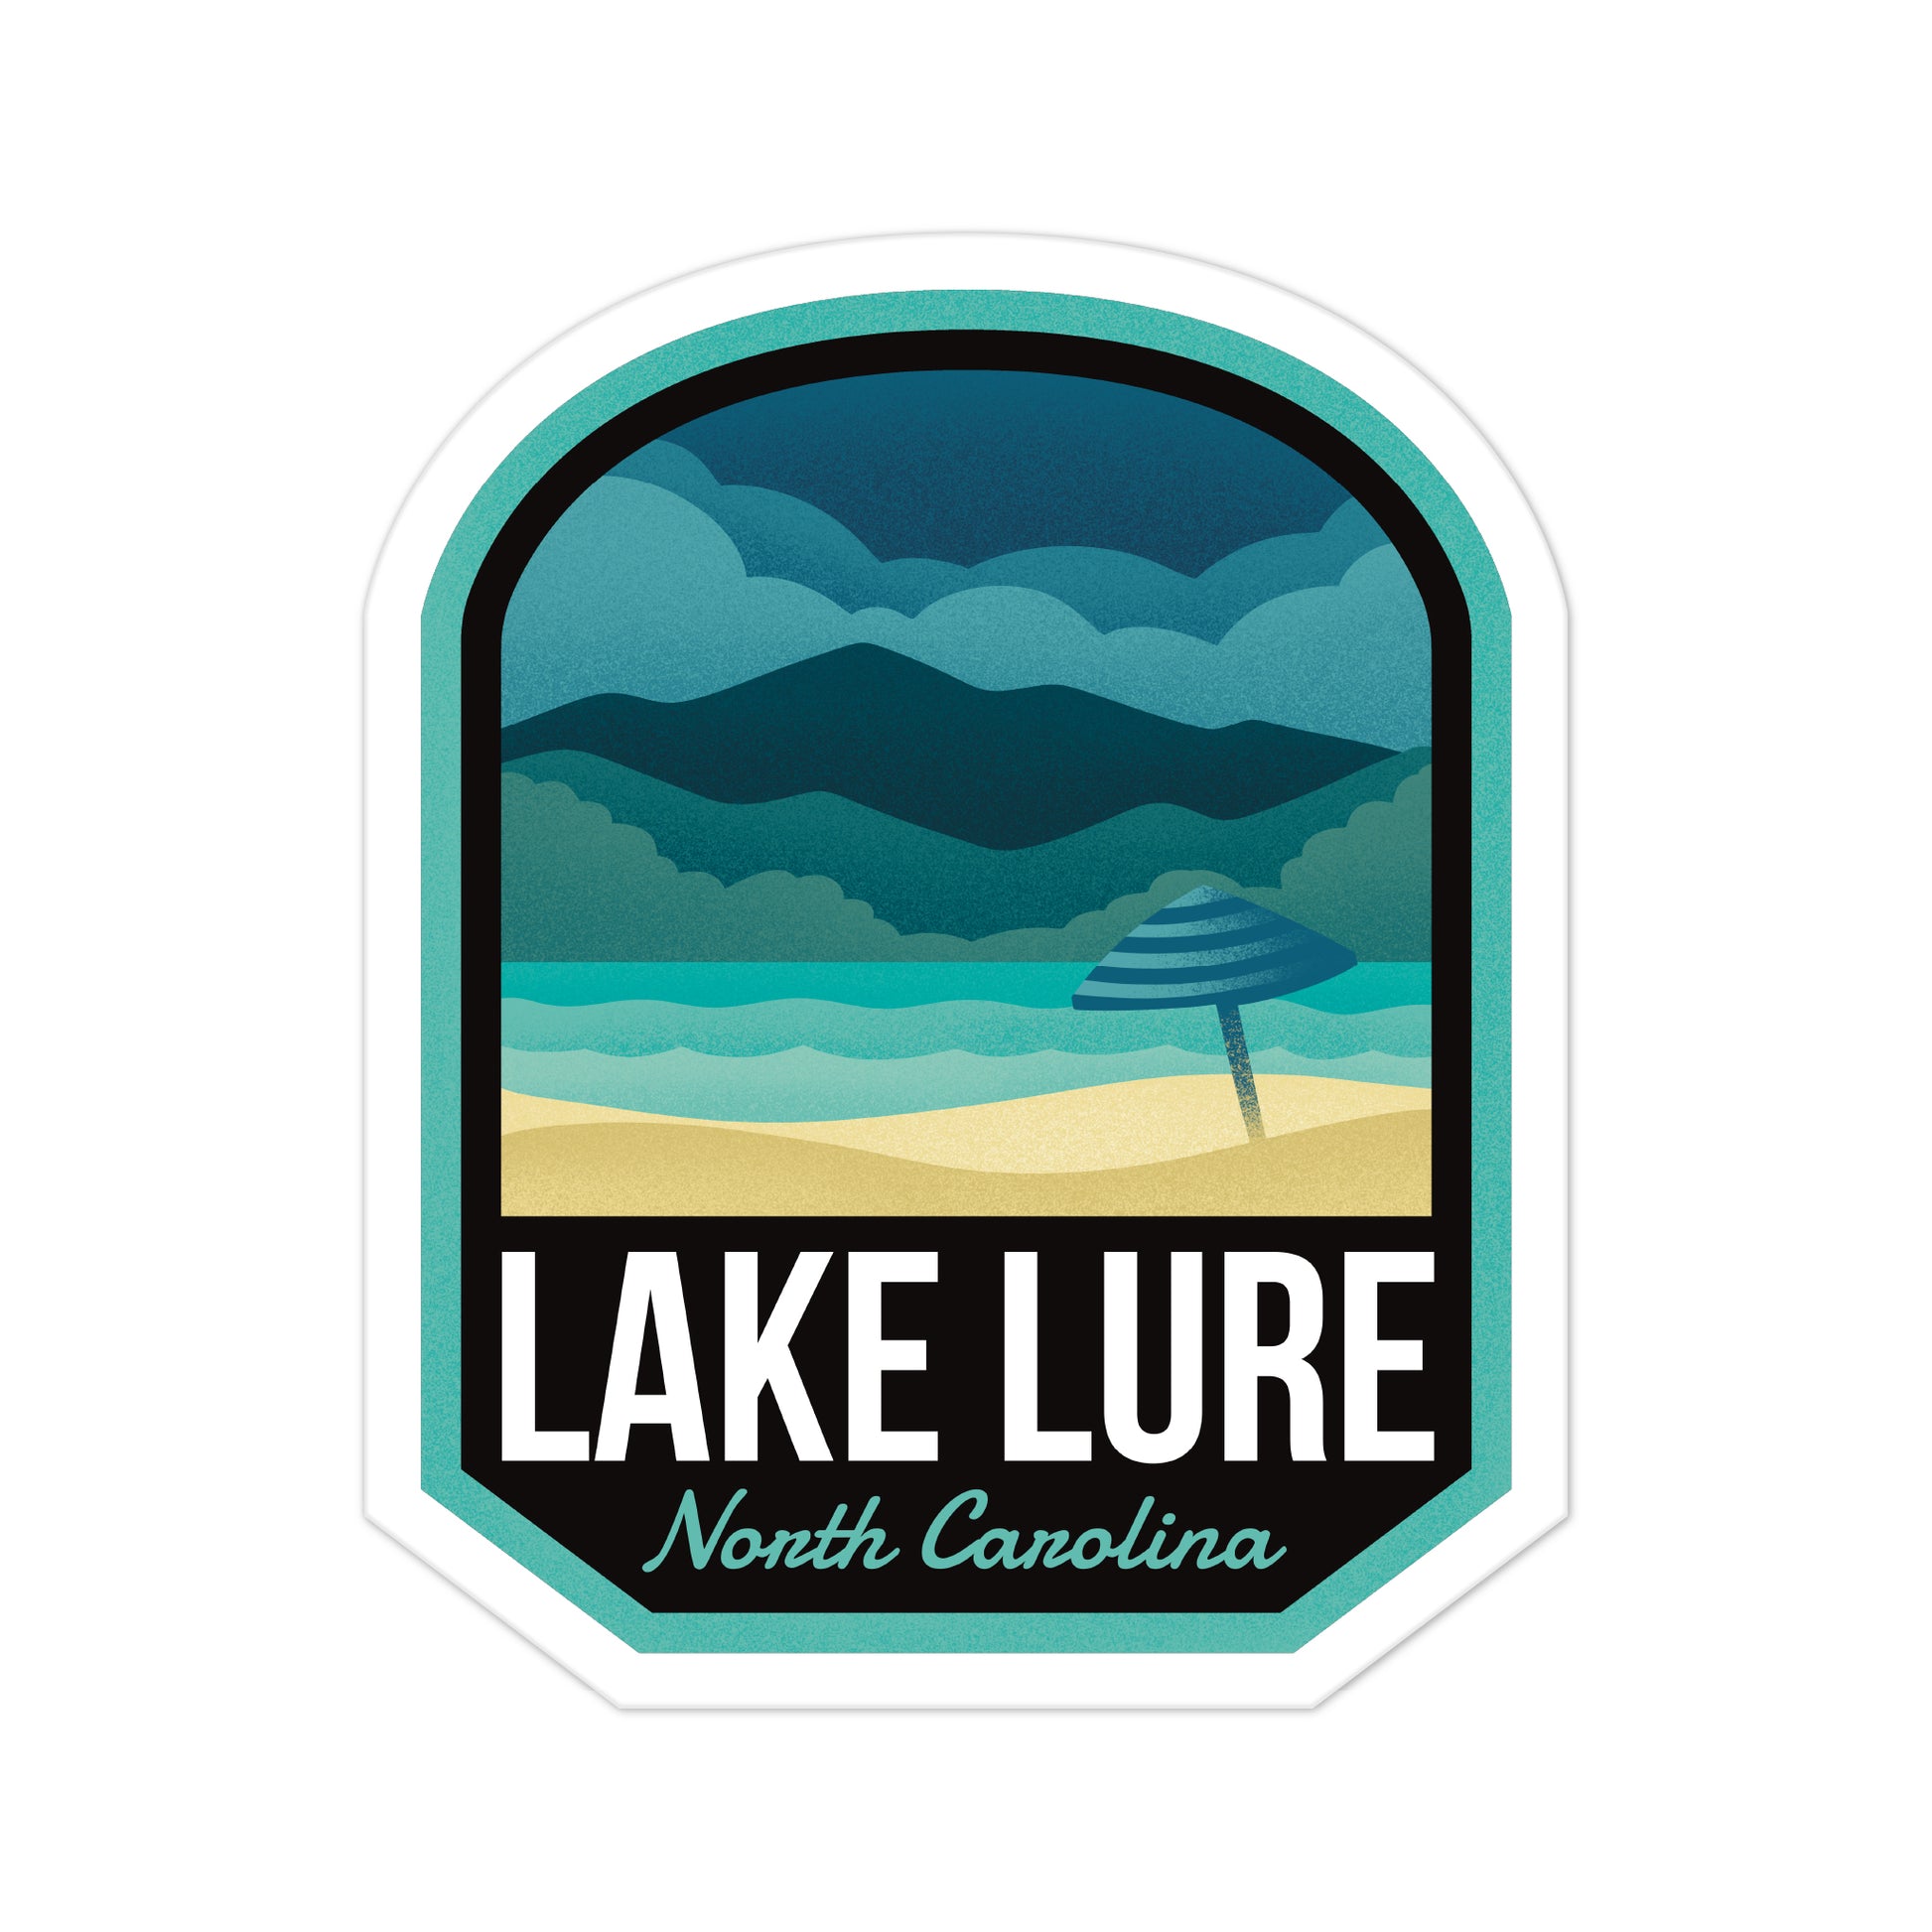 A sticker of Lake Lure North Carolina